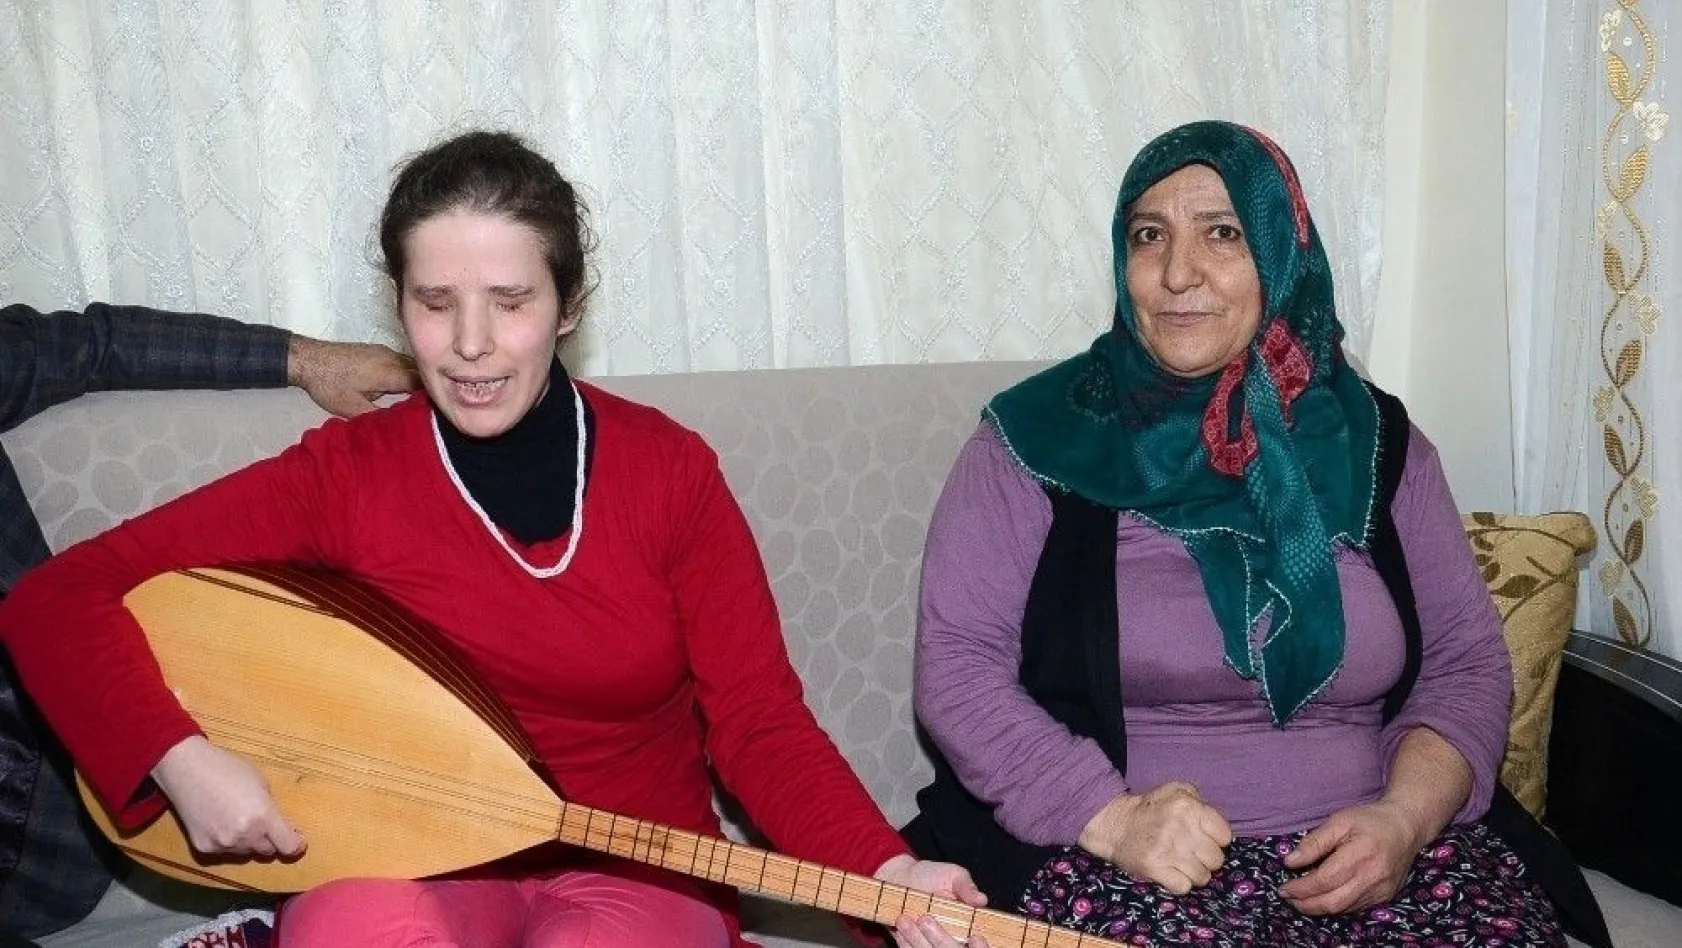 Görme engelli genç kadından Mehmetçiklere türkülü destek
